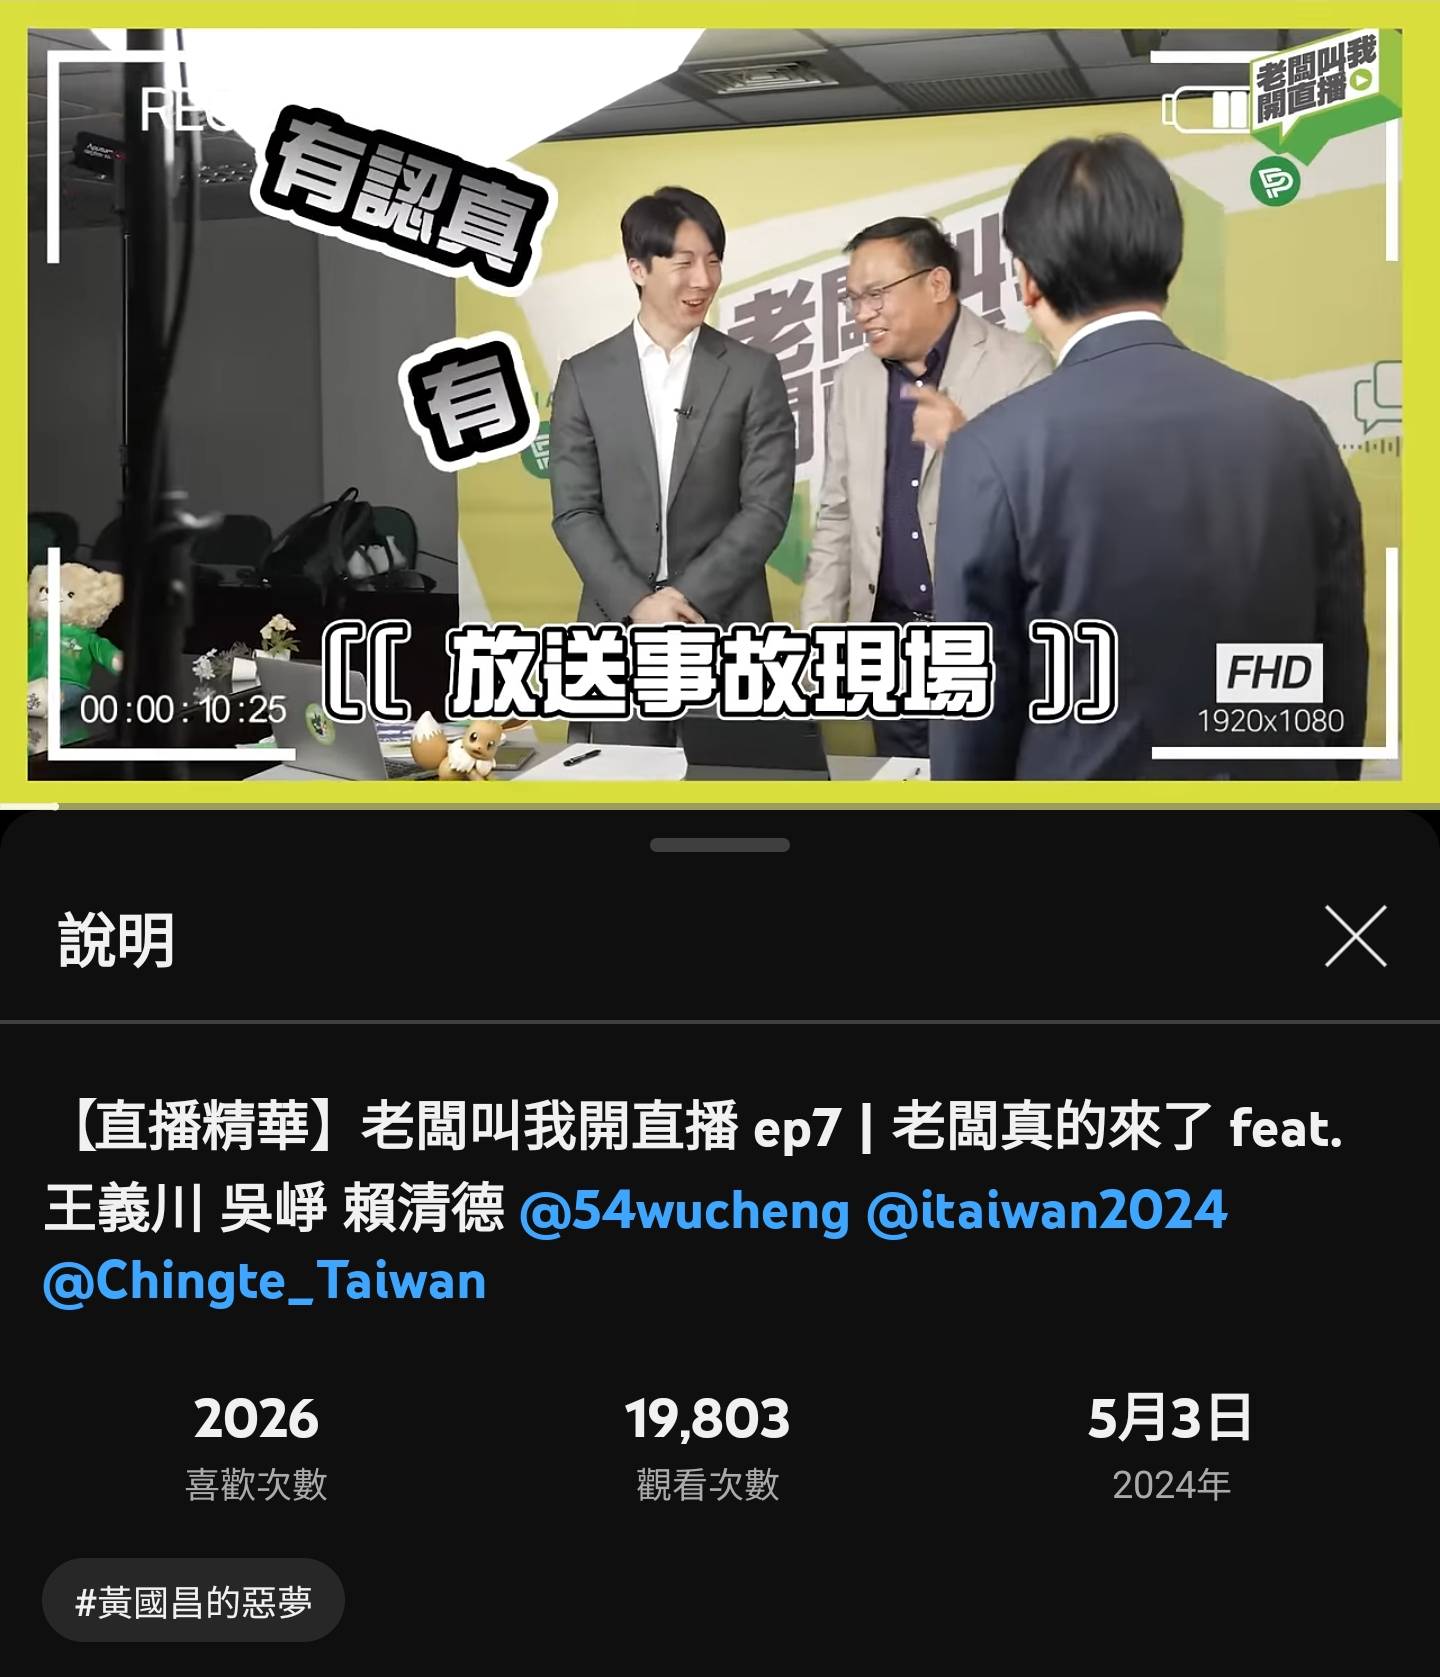 Re: [討論] 2.5萬人看黃國昌直播